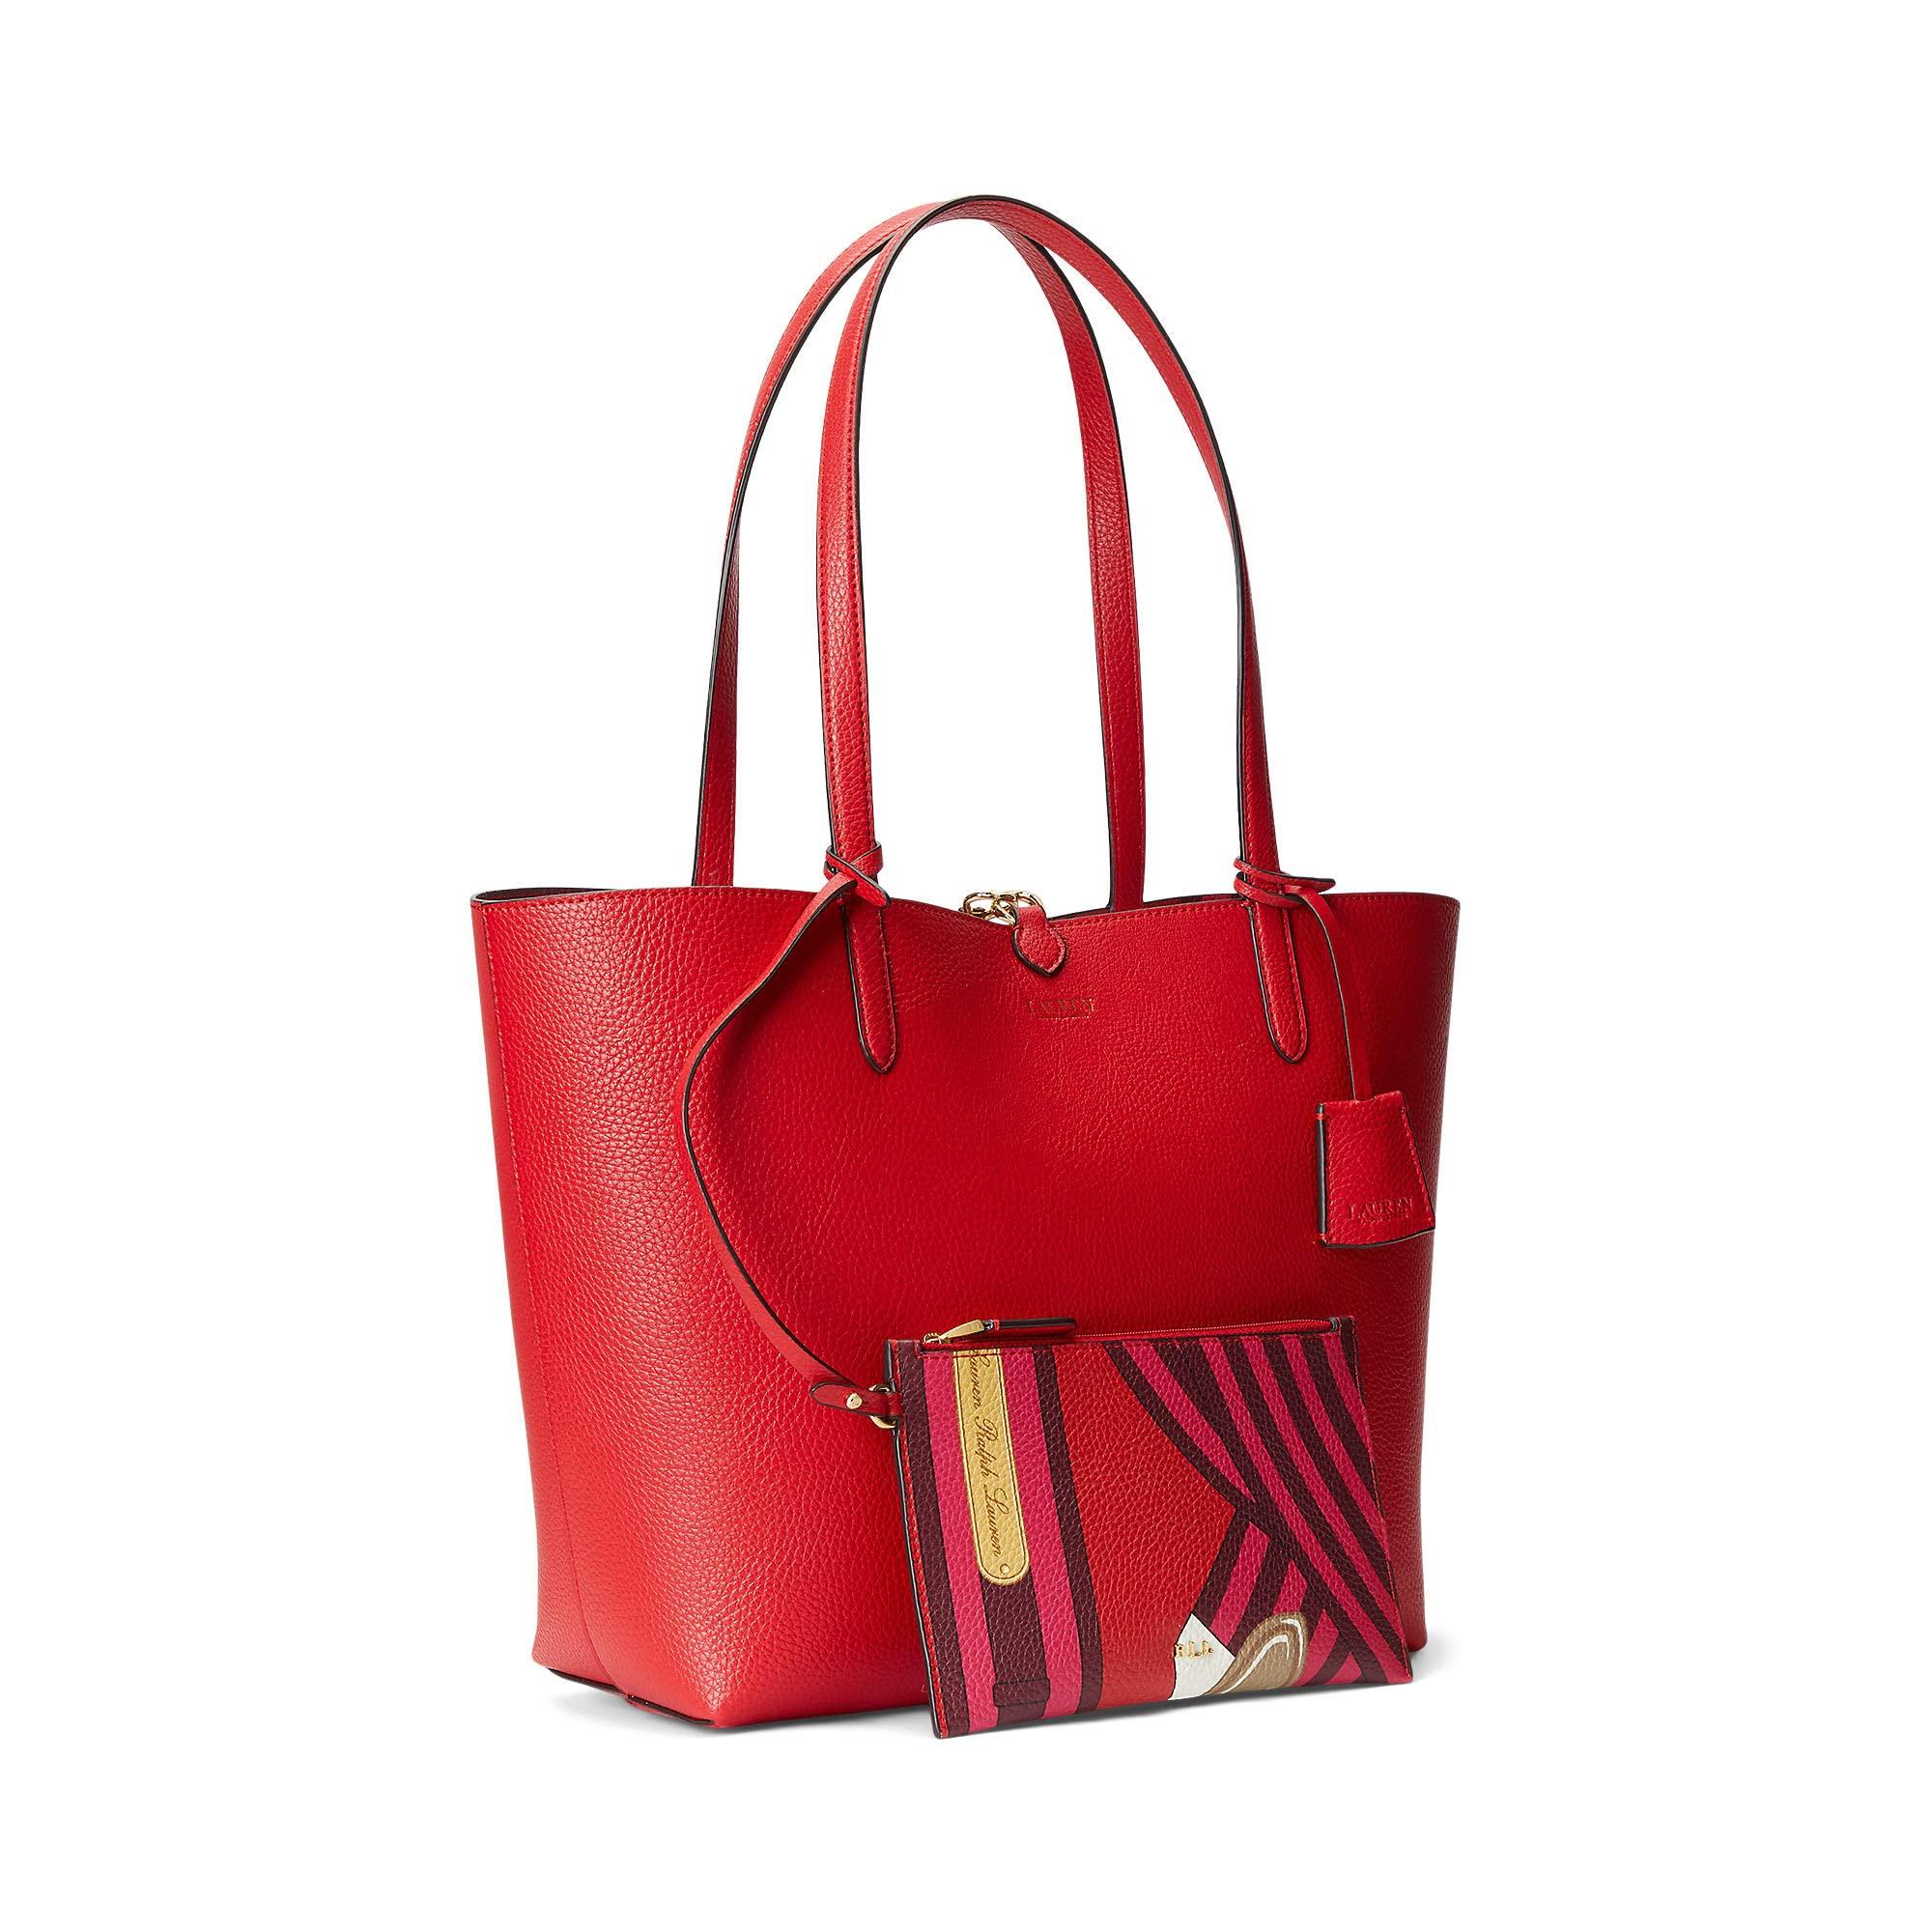 Lauren Ralph Lauren One Size Crosshatch Leather Tote • Red • Dust Bag